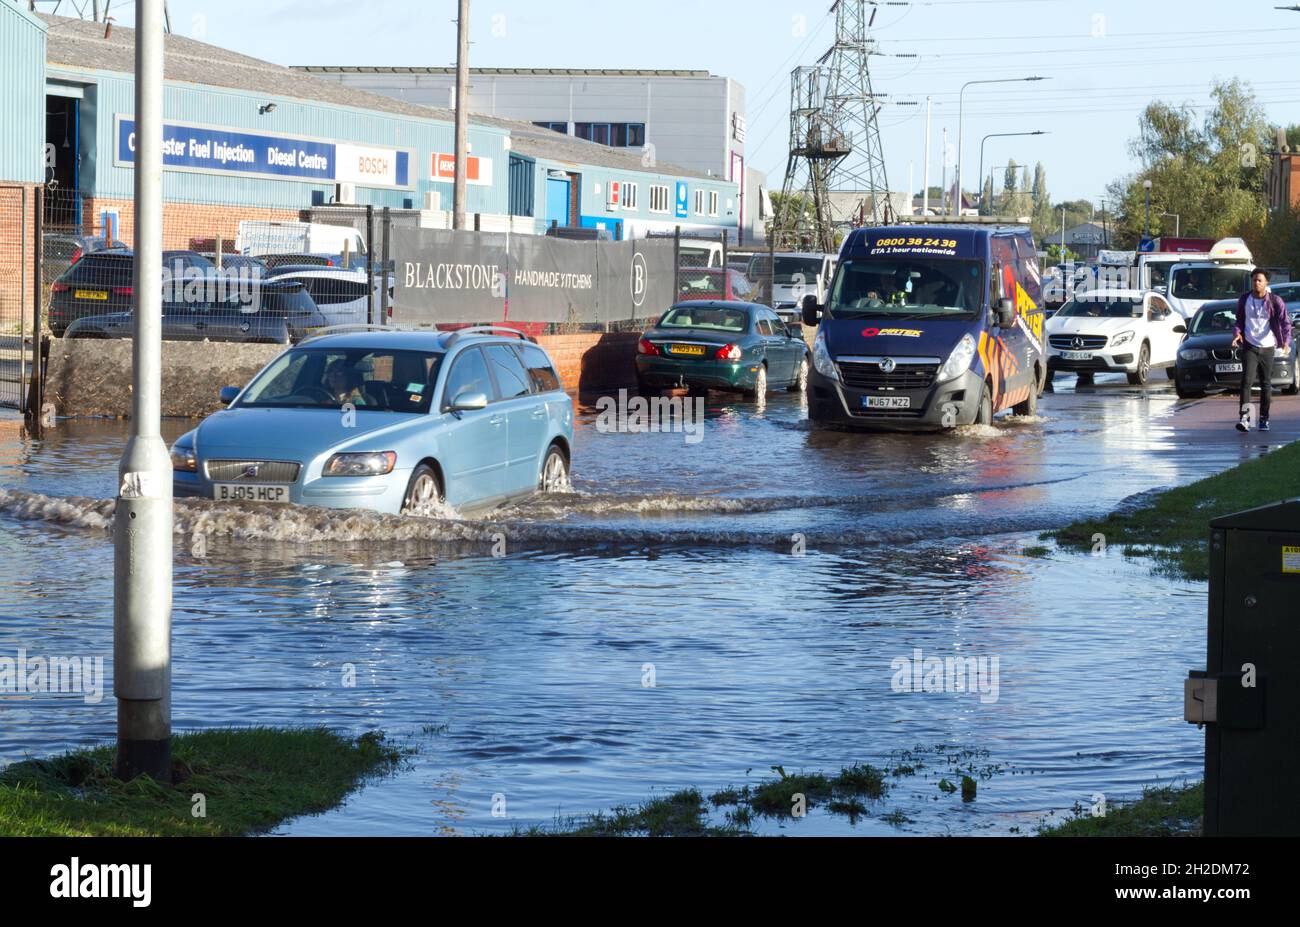 Colchester, Royaume-Uni. 21st octobre 2021. Des batailles de la circulation pour traverser les eaux de crue dans la région de Hythe de Colchester dans l'Essex après de fortes pluies de nuit. Crédit : Eastern Views/Alamy Live News Banque D'Images